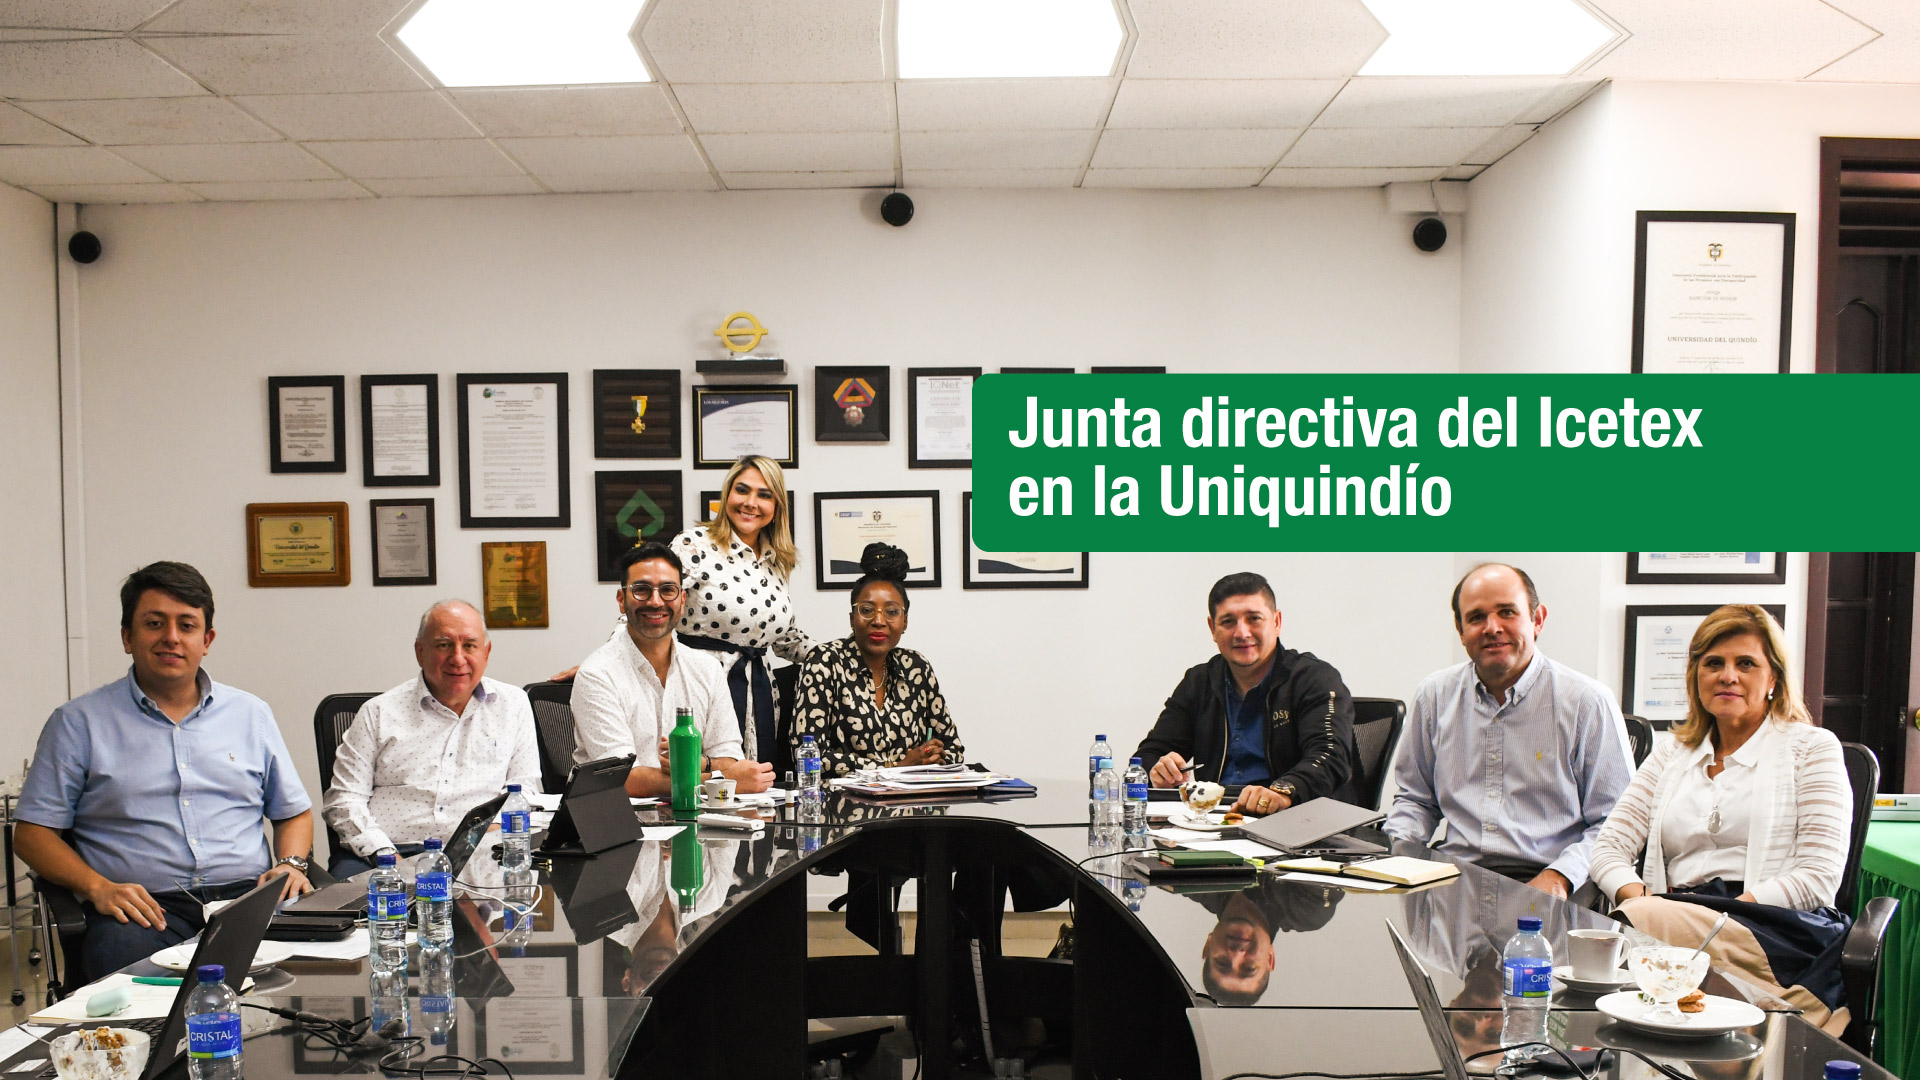 La junta directiva del Icetex se reunió en la Uniquindío para discutir sobre temas de ampliación de cobertura y disminución de intereses